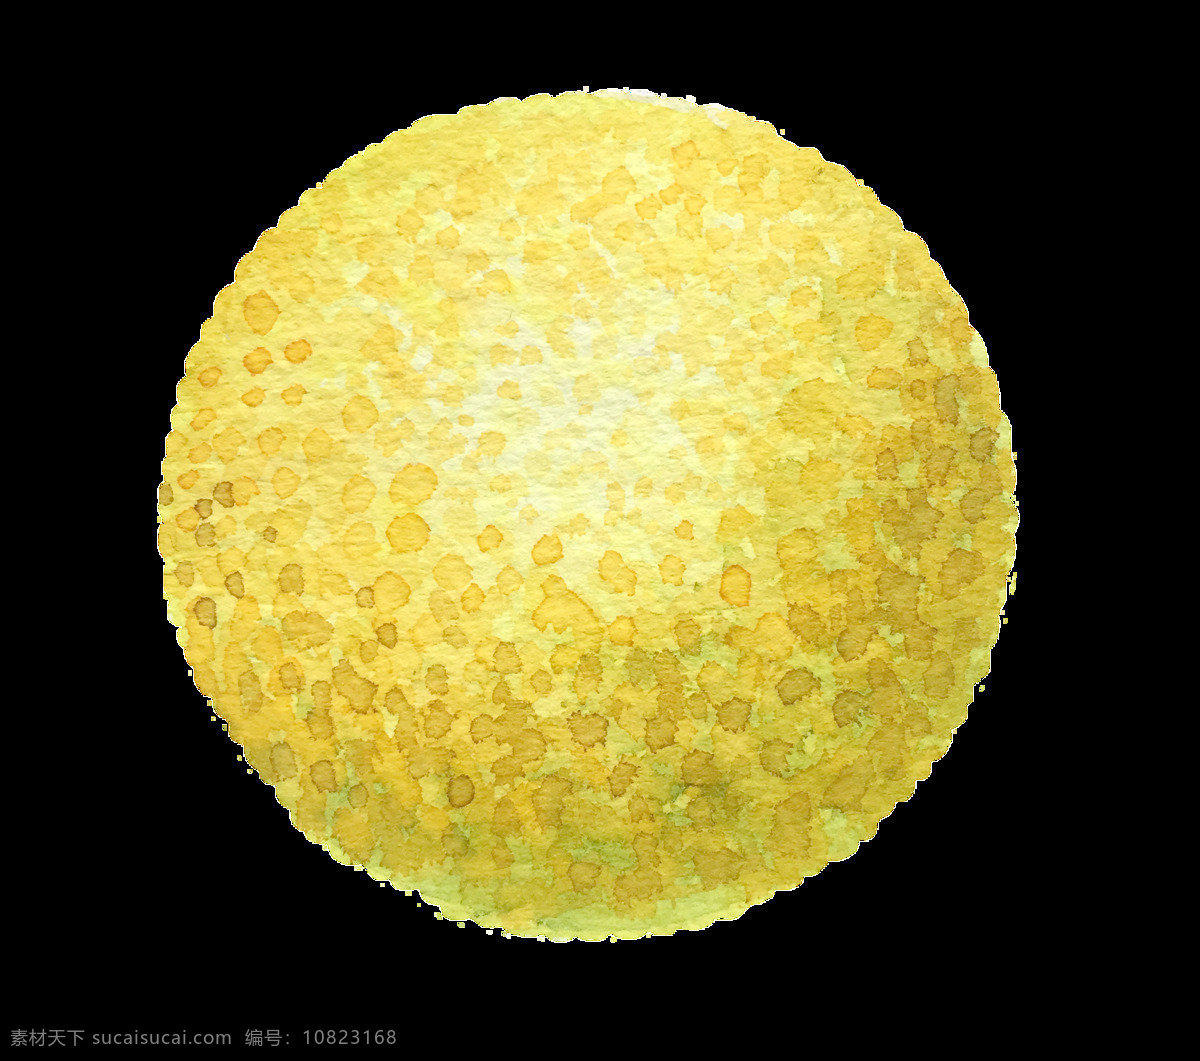 黄色 圆形 球状 物体 卡通 透明 抠图专用 装饰 设计素材